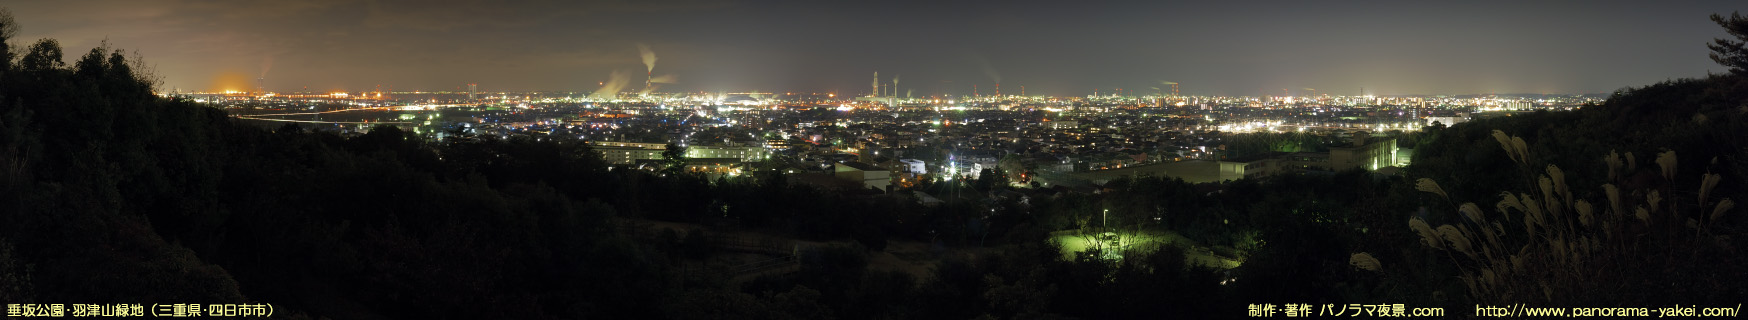 垂坂公園・羽津山緑地からのパノラマ夜景写真